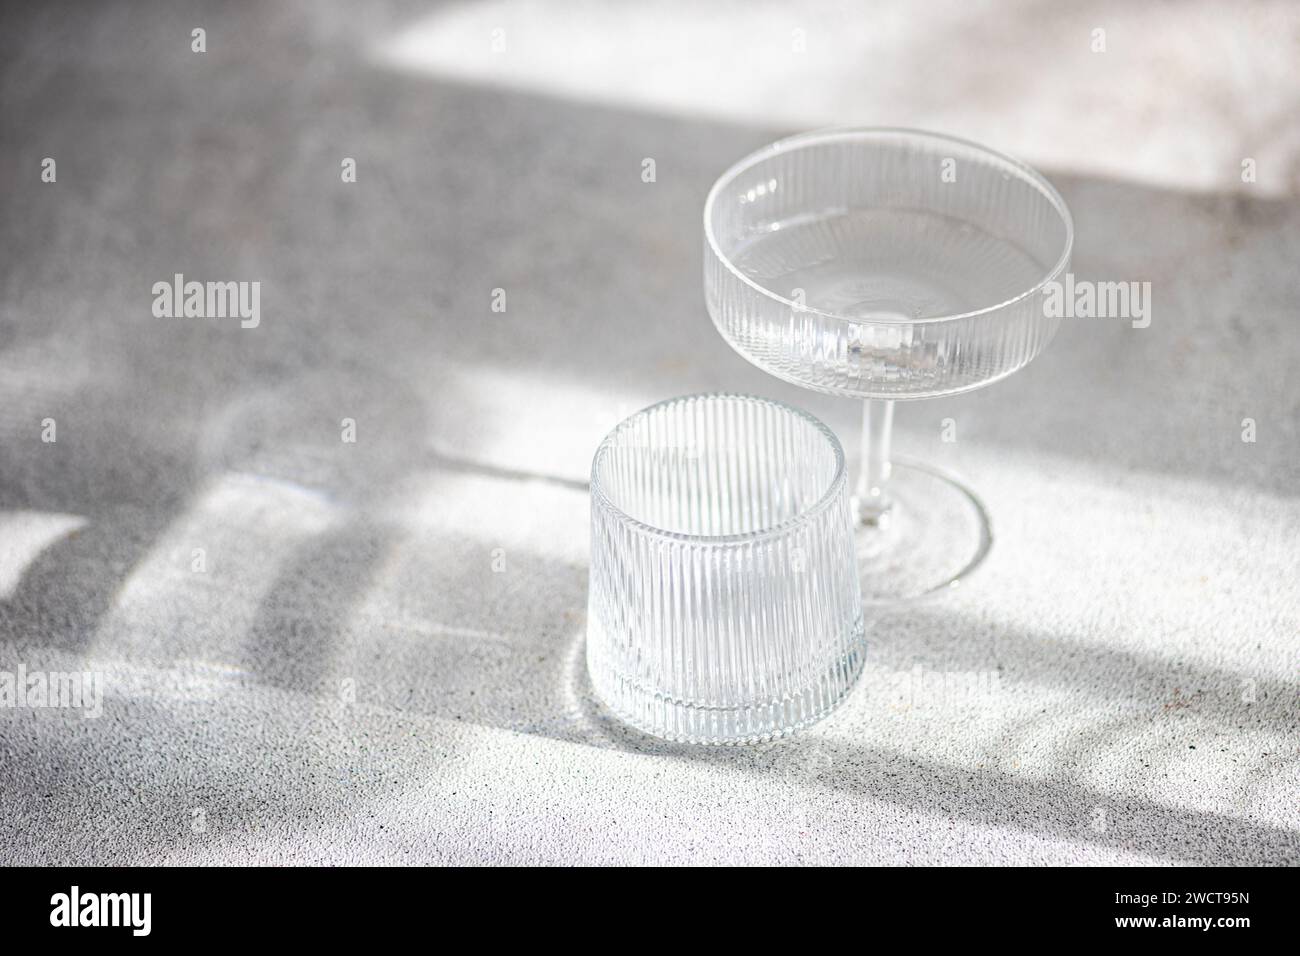 Deux élégantes pièces de verre baignées de lumière douce créant un jeu de lumière et d’ombres sur une surface texturée Banque D'Images